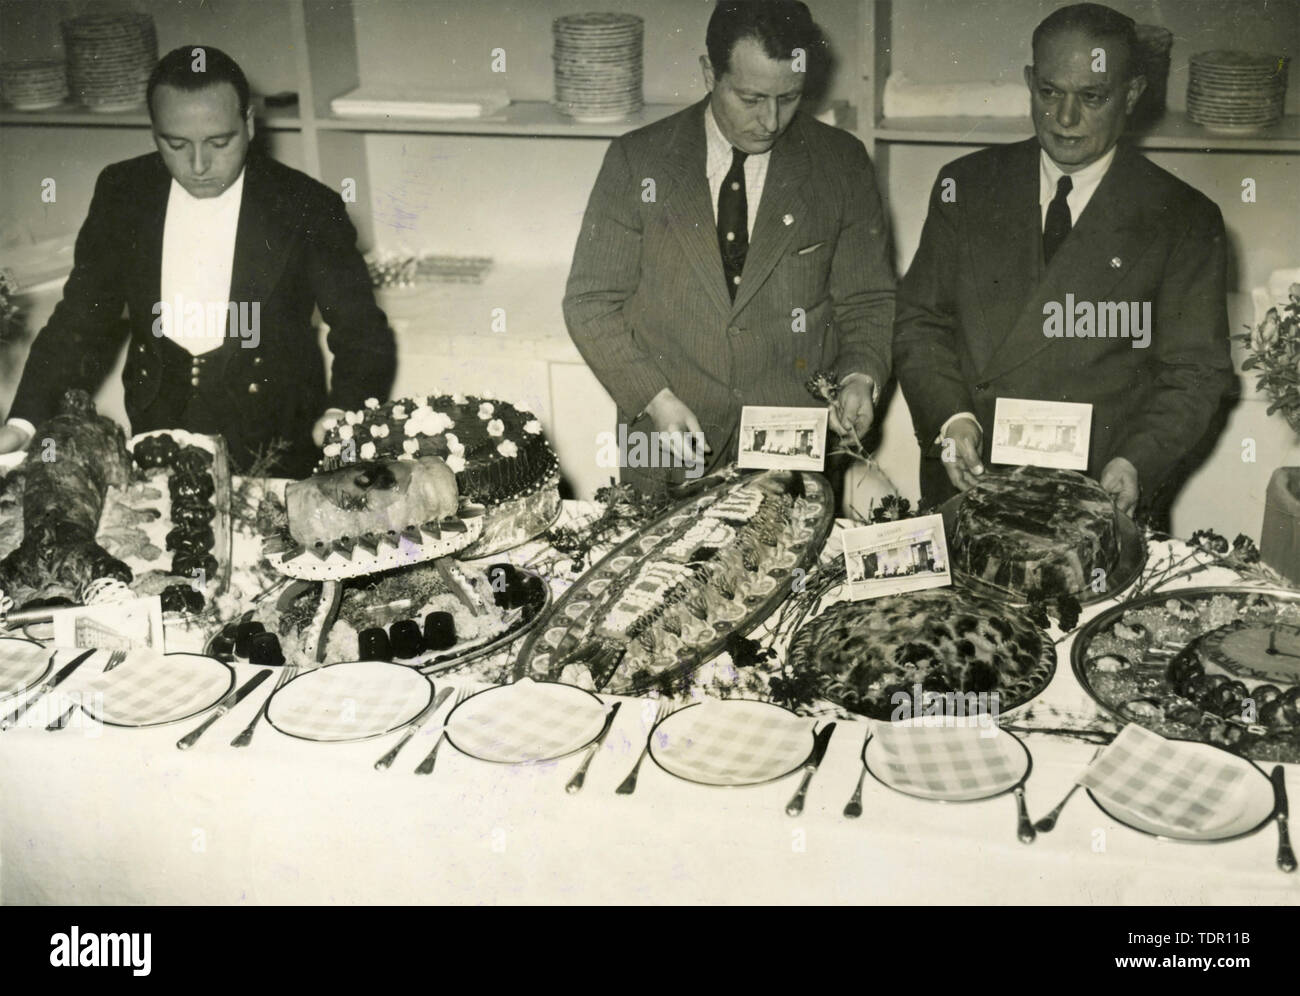 Salon de l'alimentation au Circo Massimo, Rome, Italie 1940 Banque D'Images